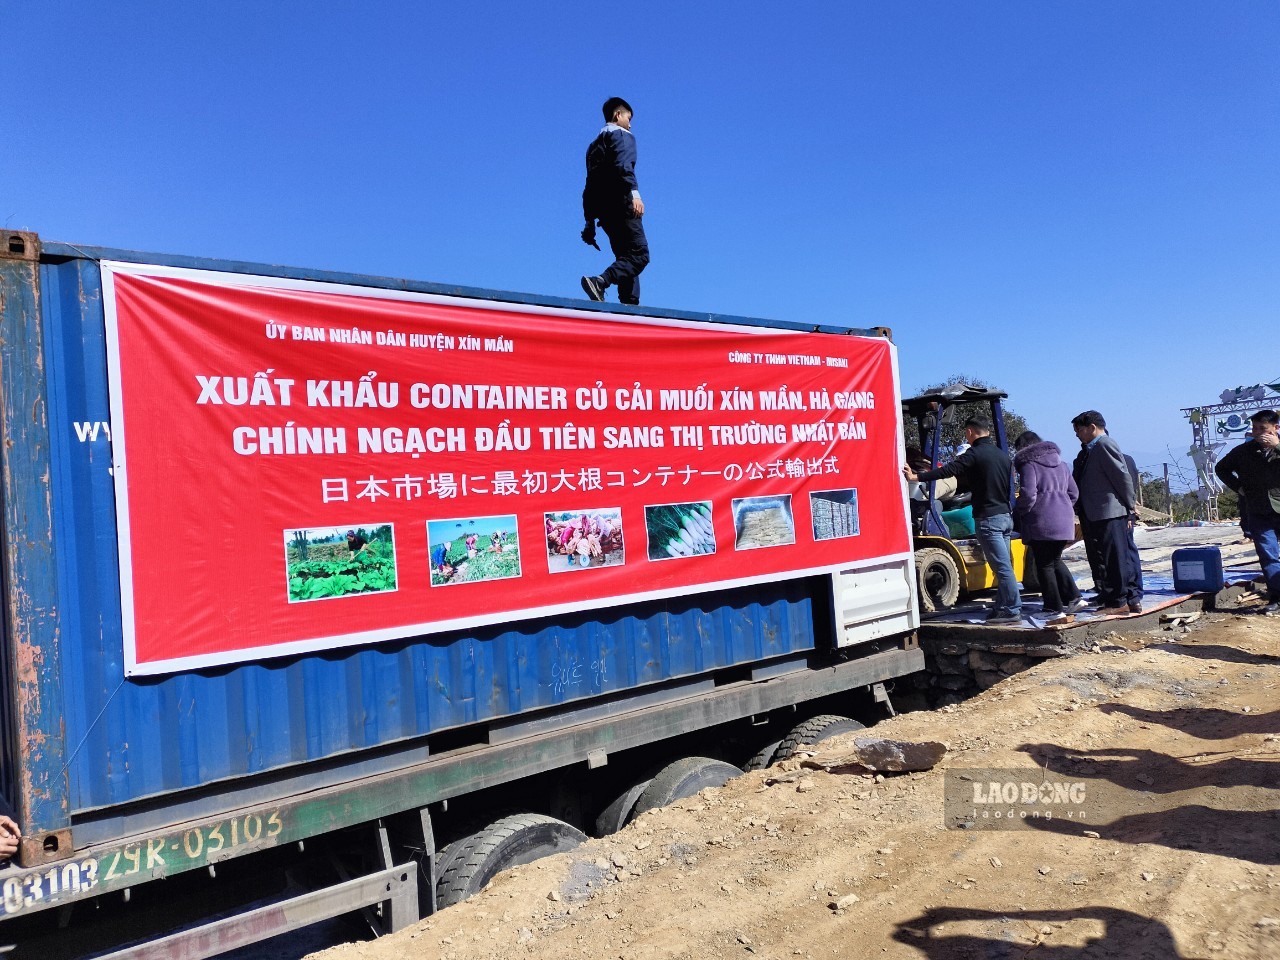 Lô 18 tấn củ cải muối của huyện Xín Mần (Hà Giang) thành công xuất khẩu vào Nhật Bản.